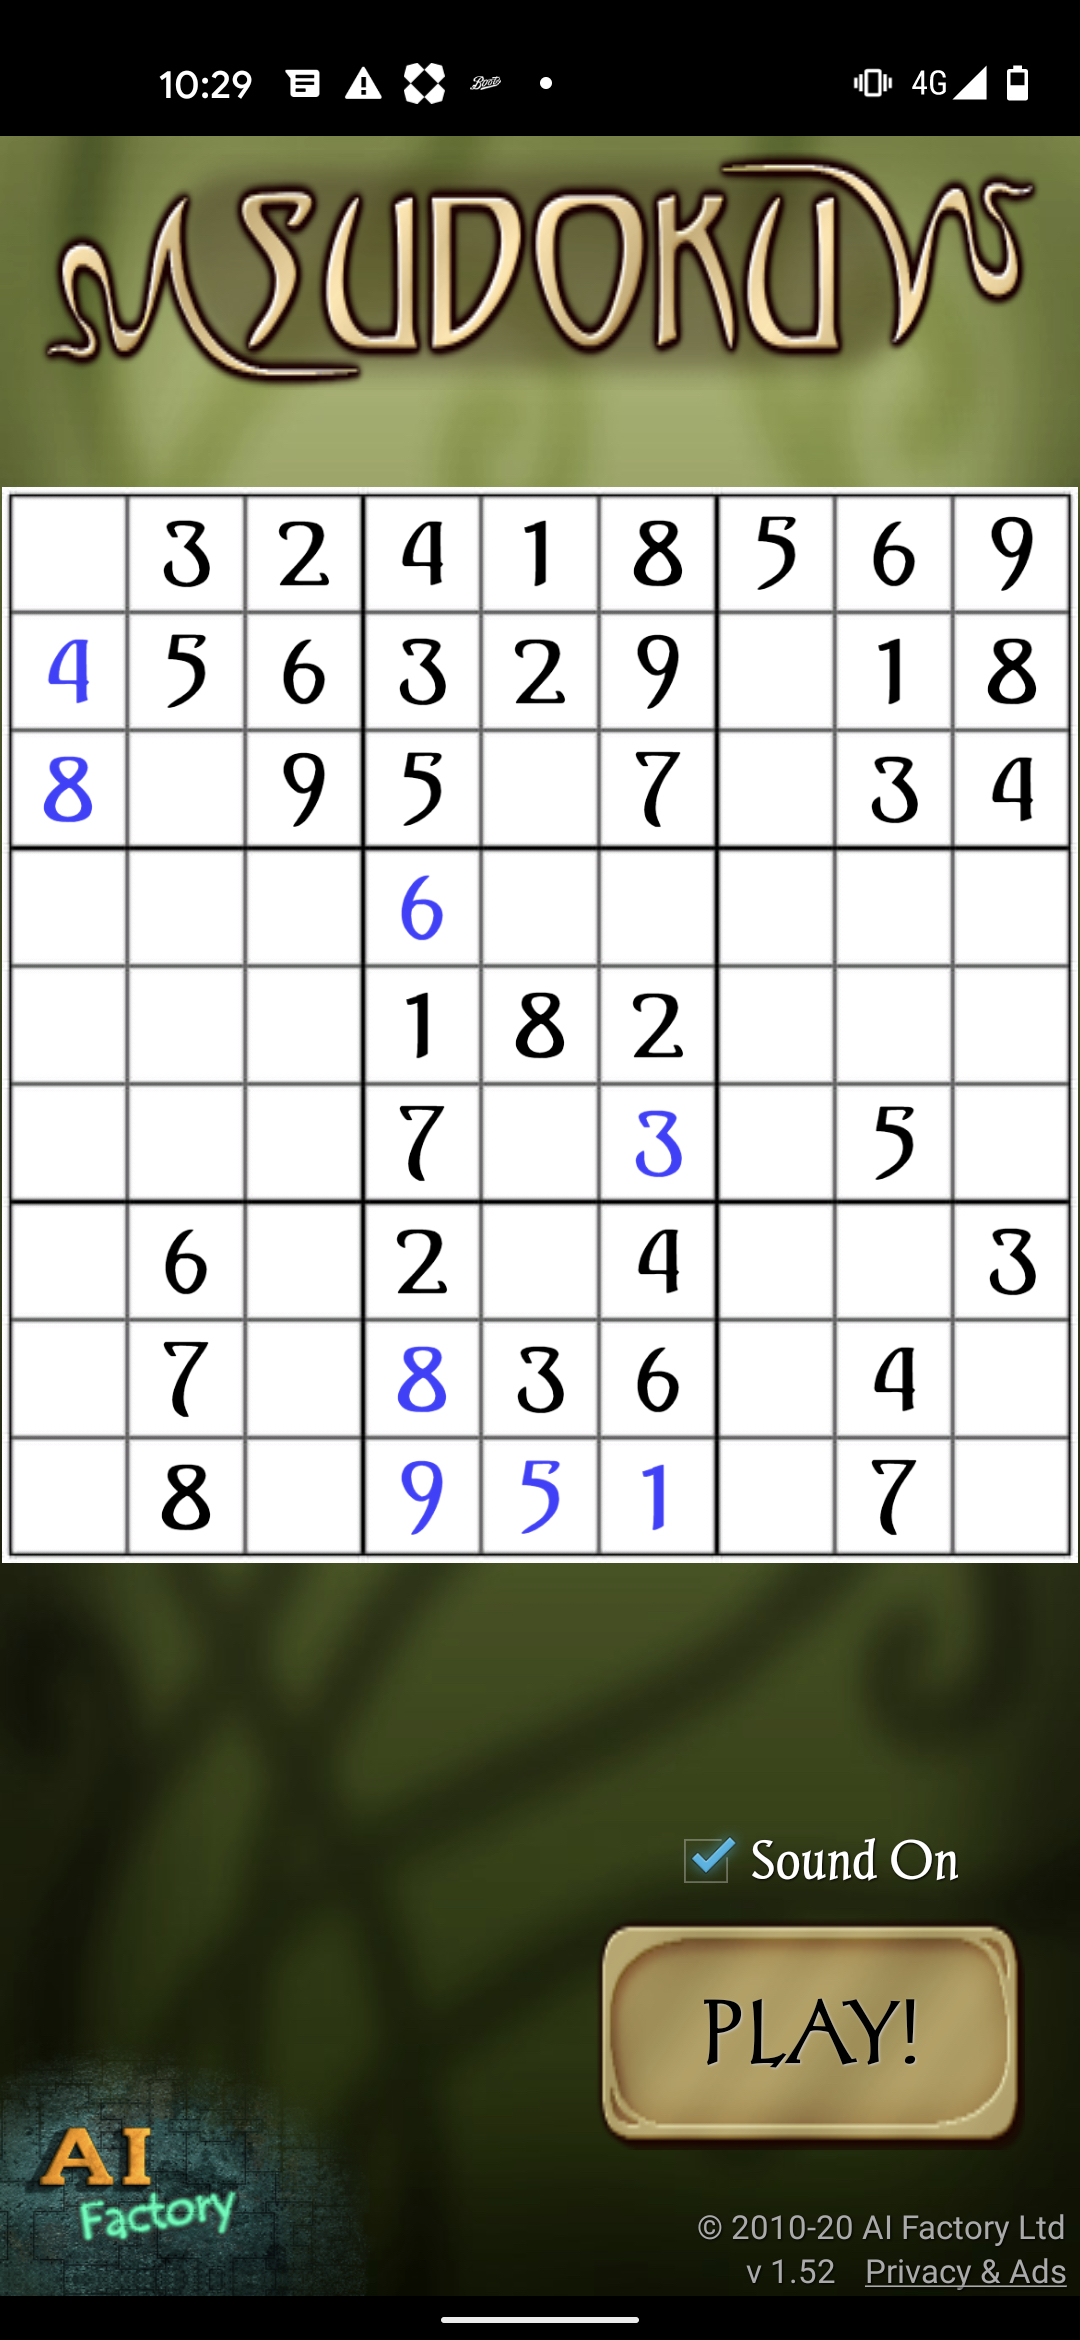 Sudoku grátis em brasileiro - Download do APK para Android